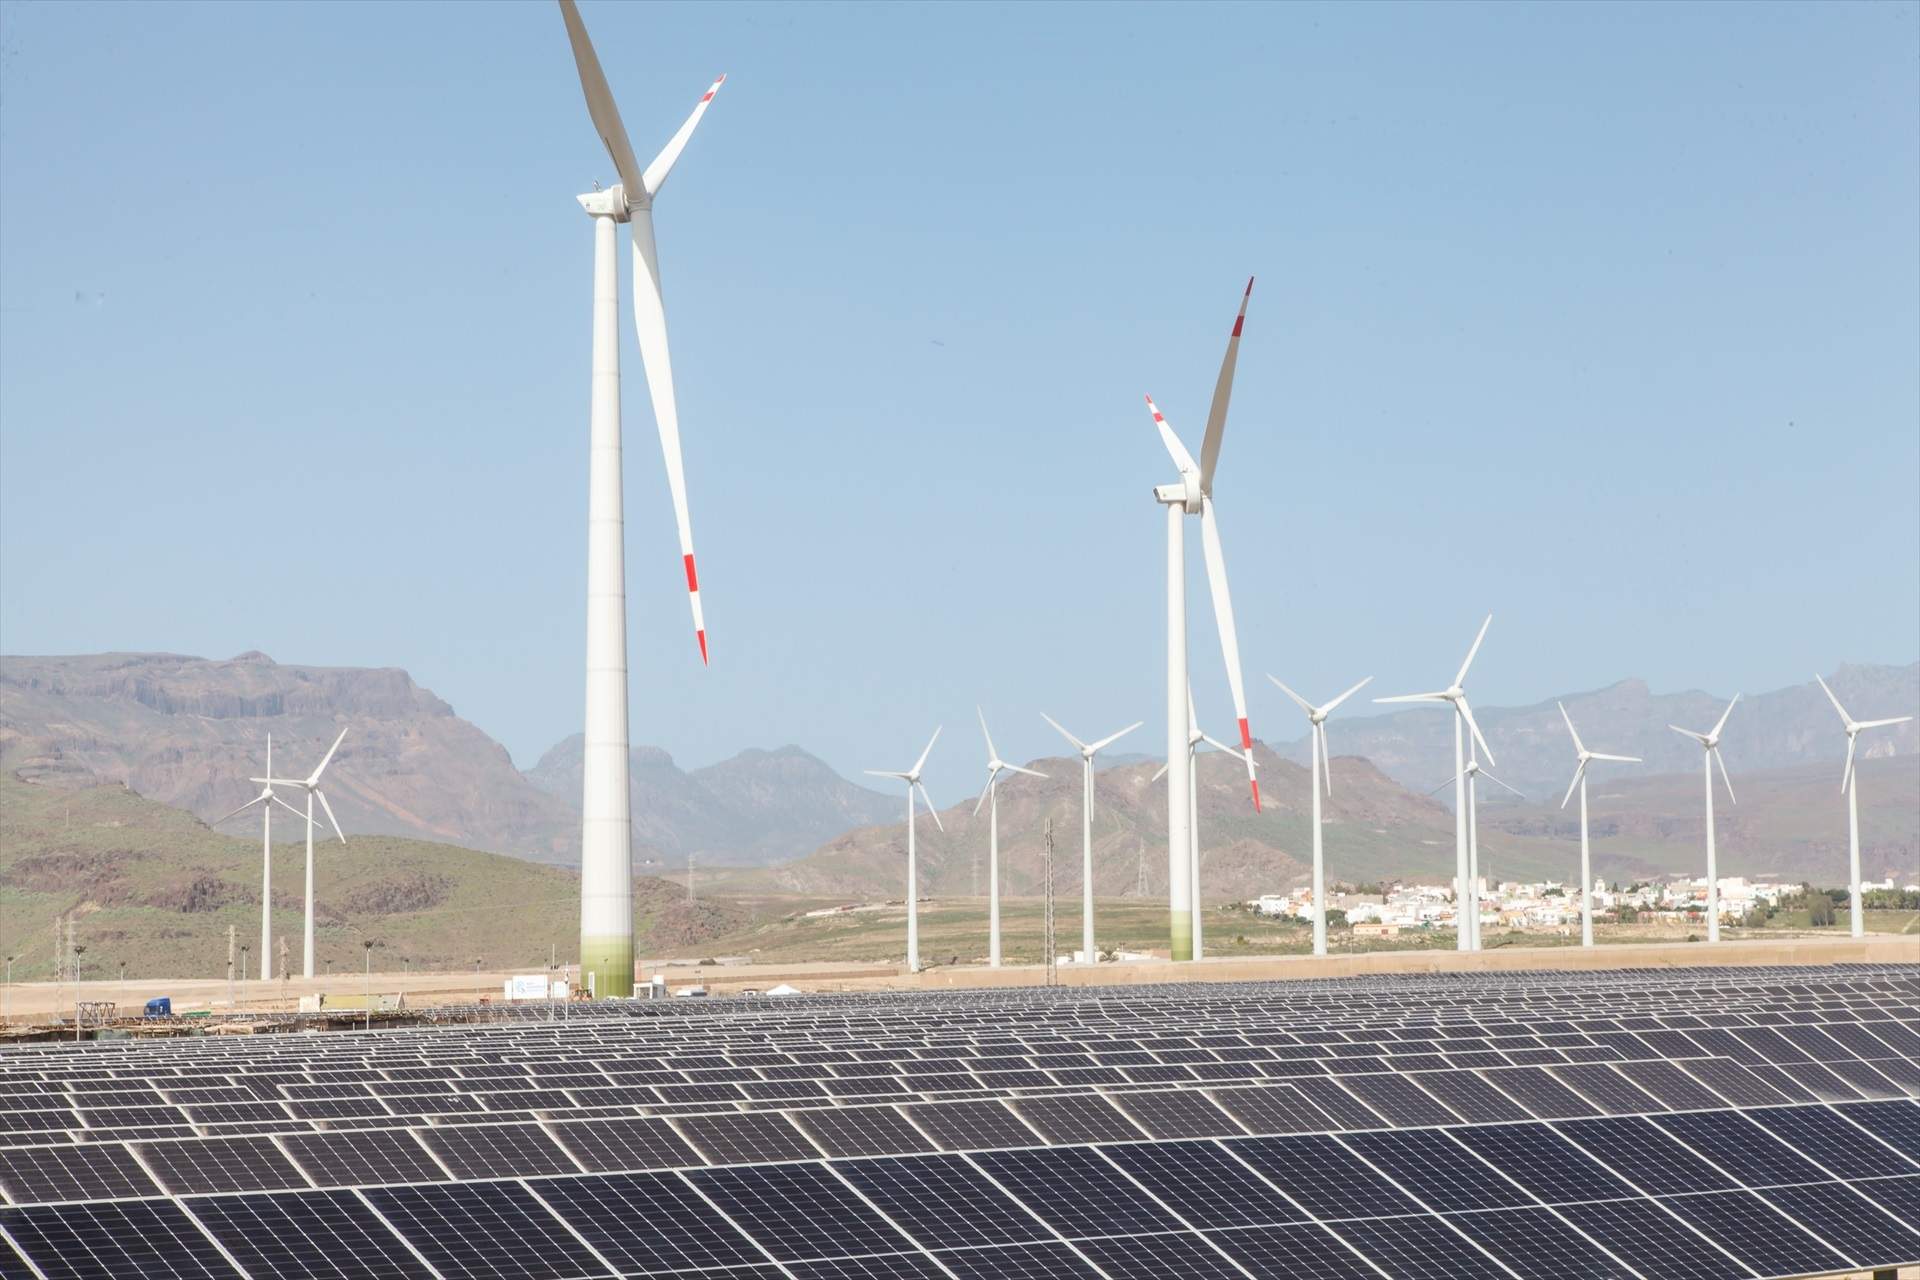 España aumenta un 69% la luz renovable en 5 años, mejor rendimiento europeo tras Alemania